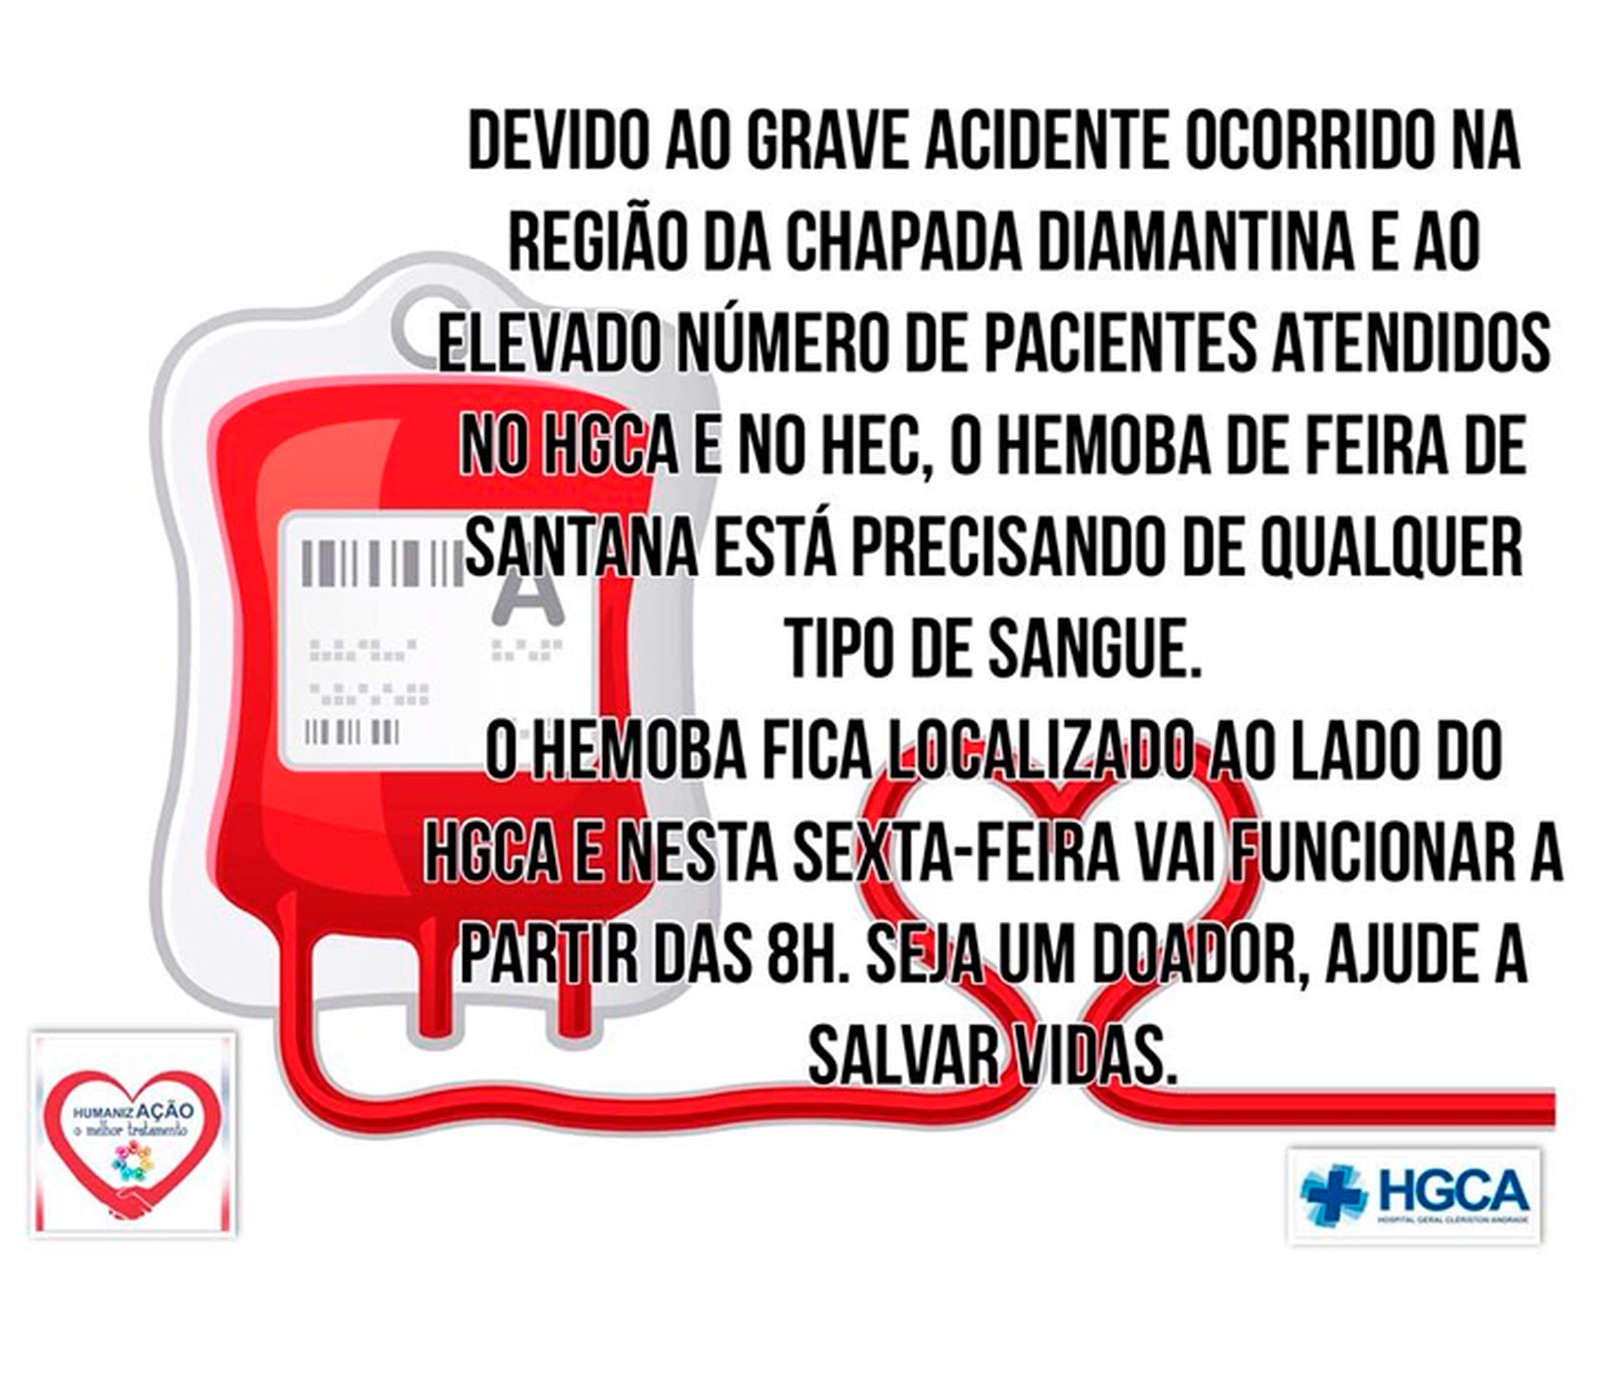 Hemoba de Feira de Santana pede doação de sangue para atender vítimas de acidente (Foto: Reprodução/Facebook)